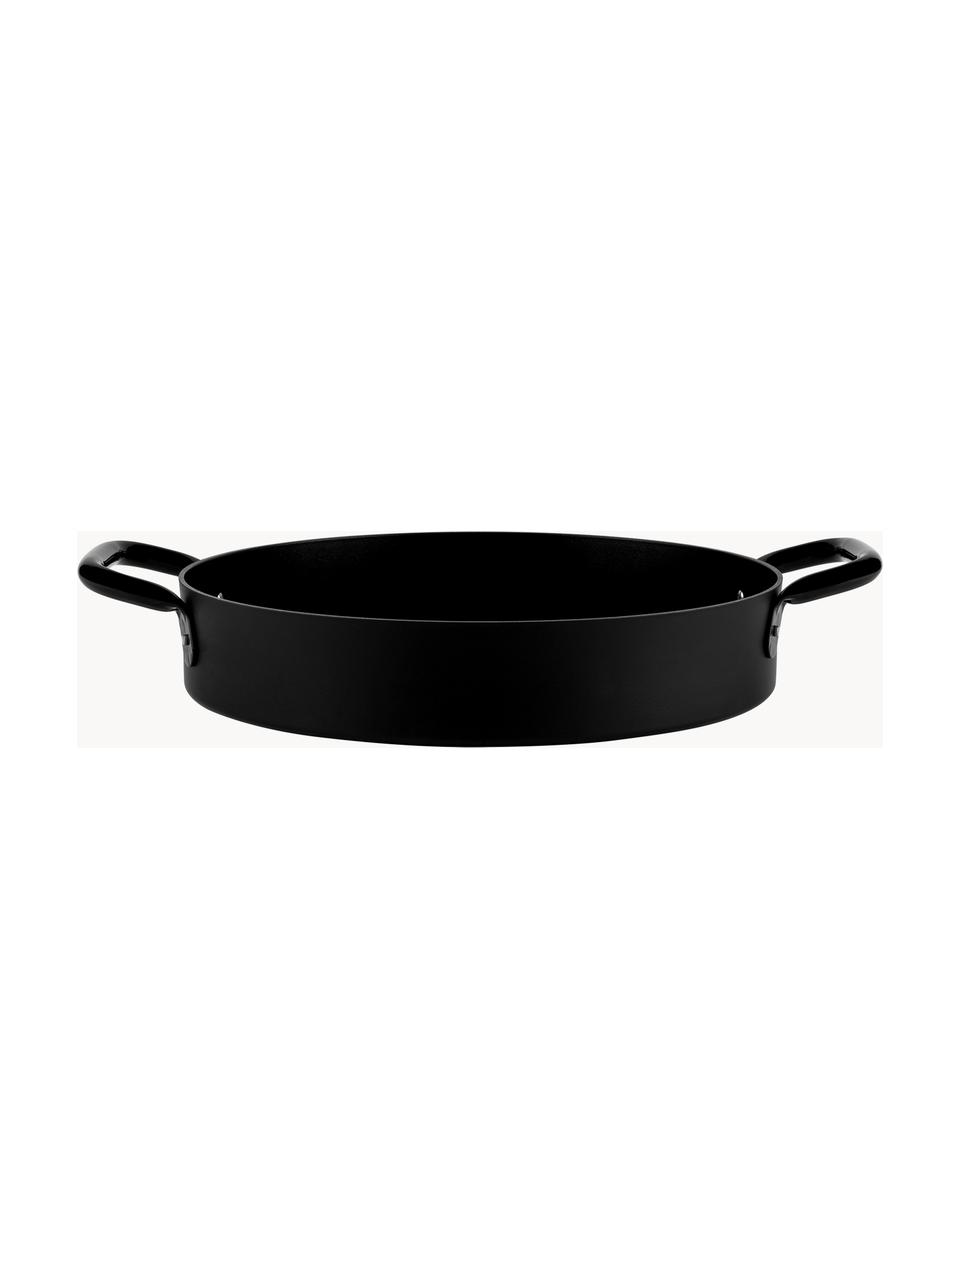 Kastrol Eat, Potažený hliník, Matná černá, Ø 36 cm, V 7 cm